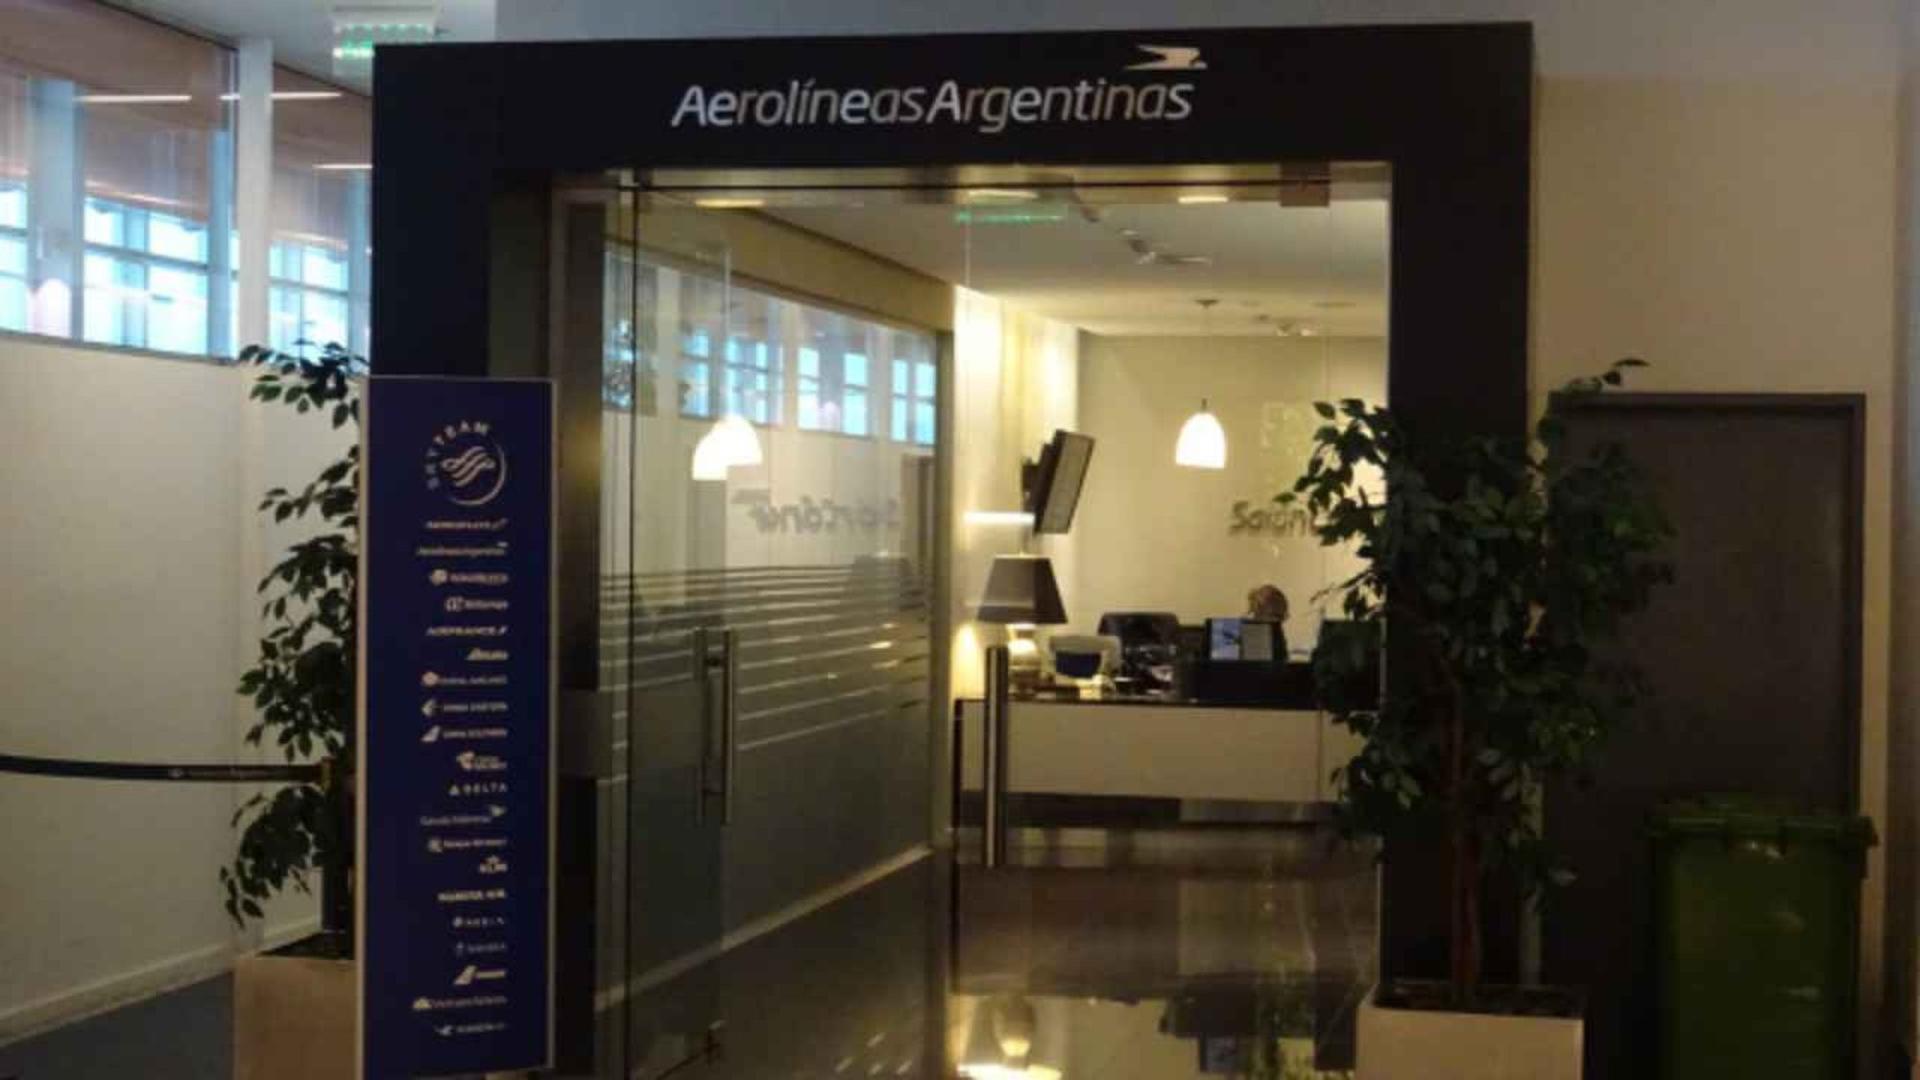 Aerolineas Argentinas Salon Condor image 9 of 22